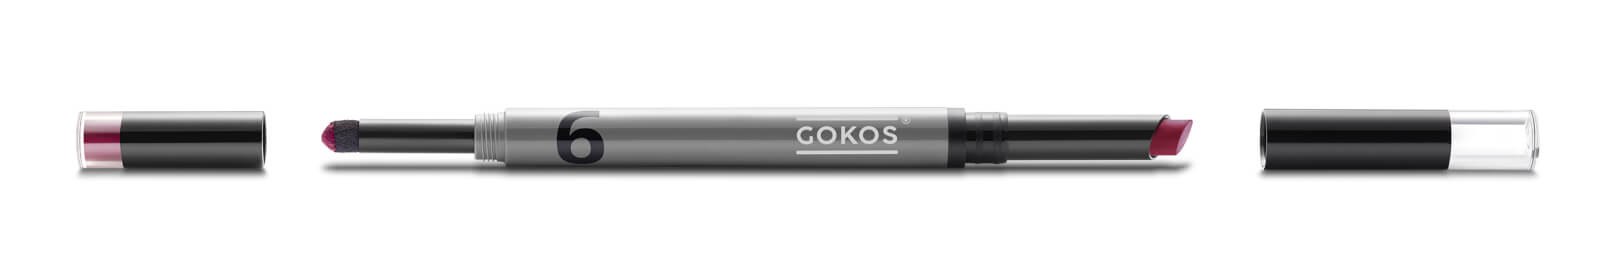 GOKOS - Beauty to go - Indie-Makeup-Brand mit Stiften 87